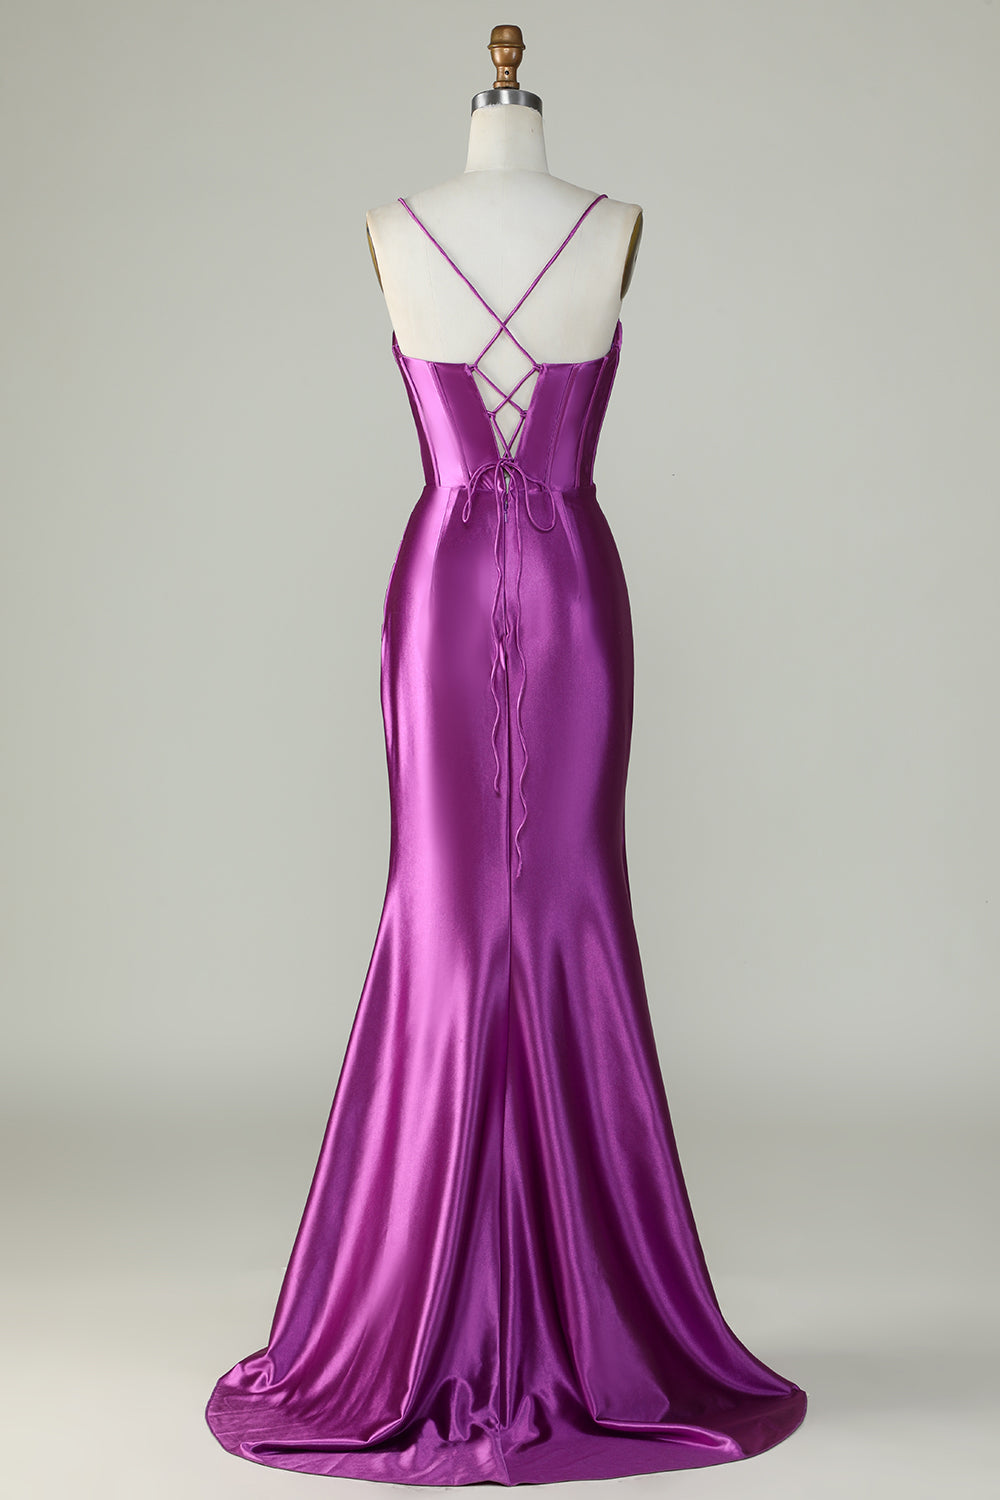 Correas de espagueti púrpura oscuro sirena vestido largo de graduación con hendidura